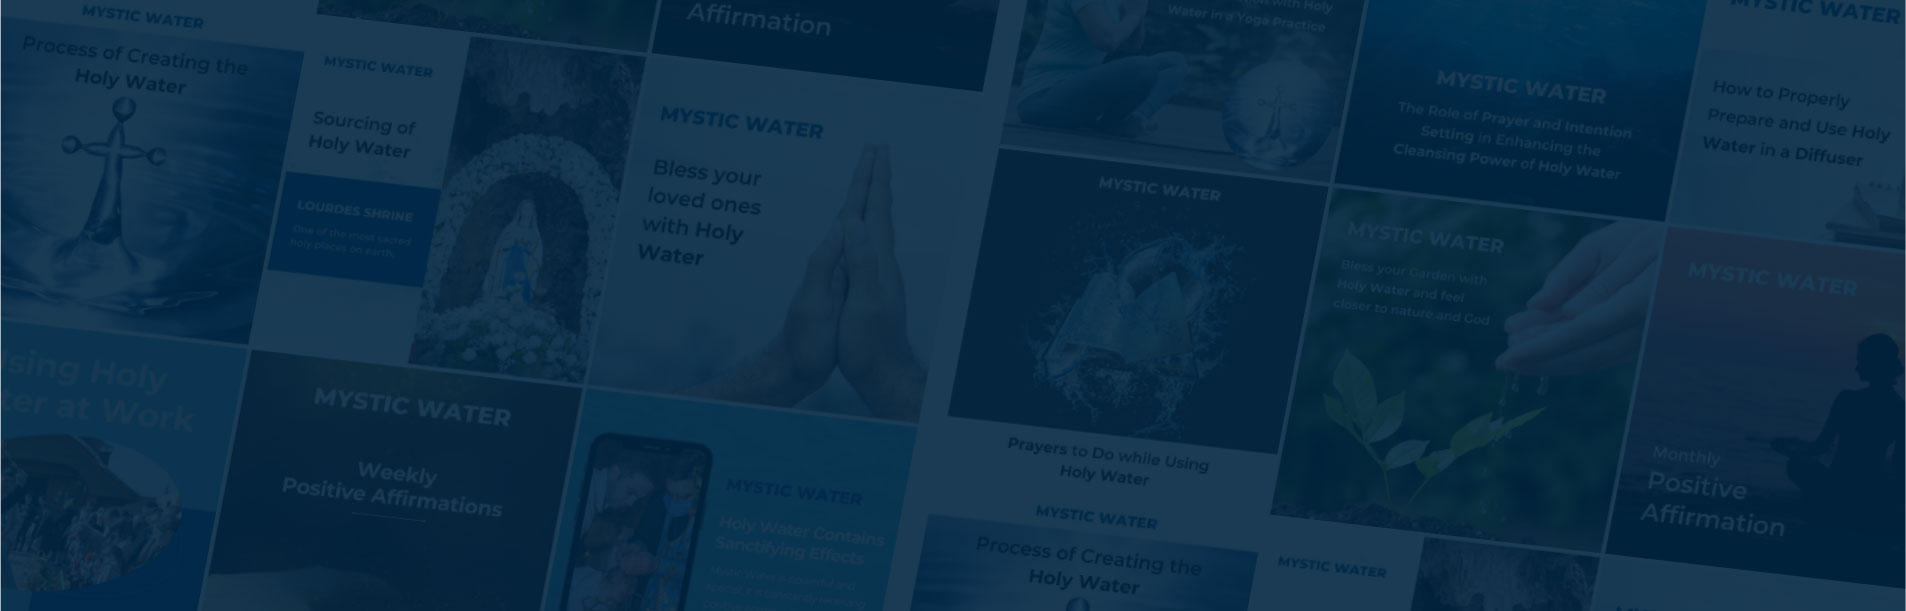 Mystic Water retail social media banner